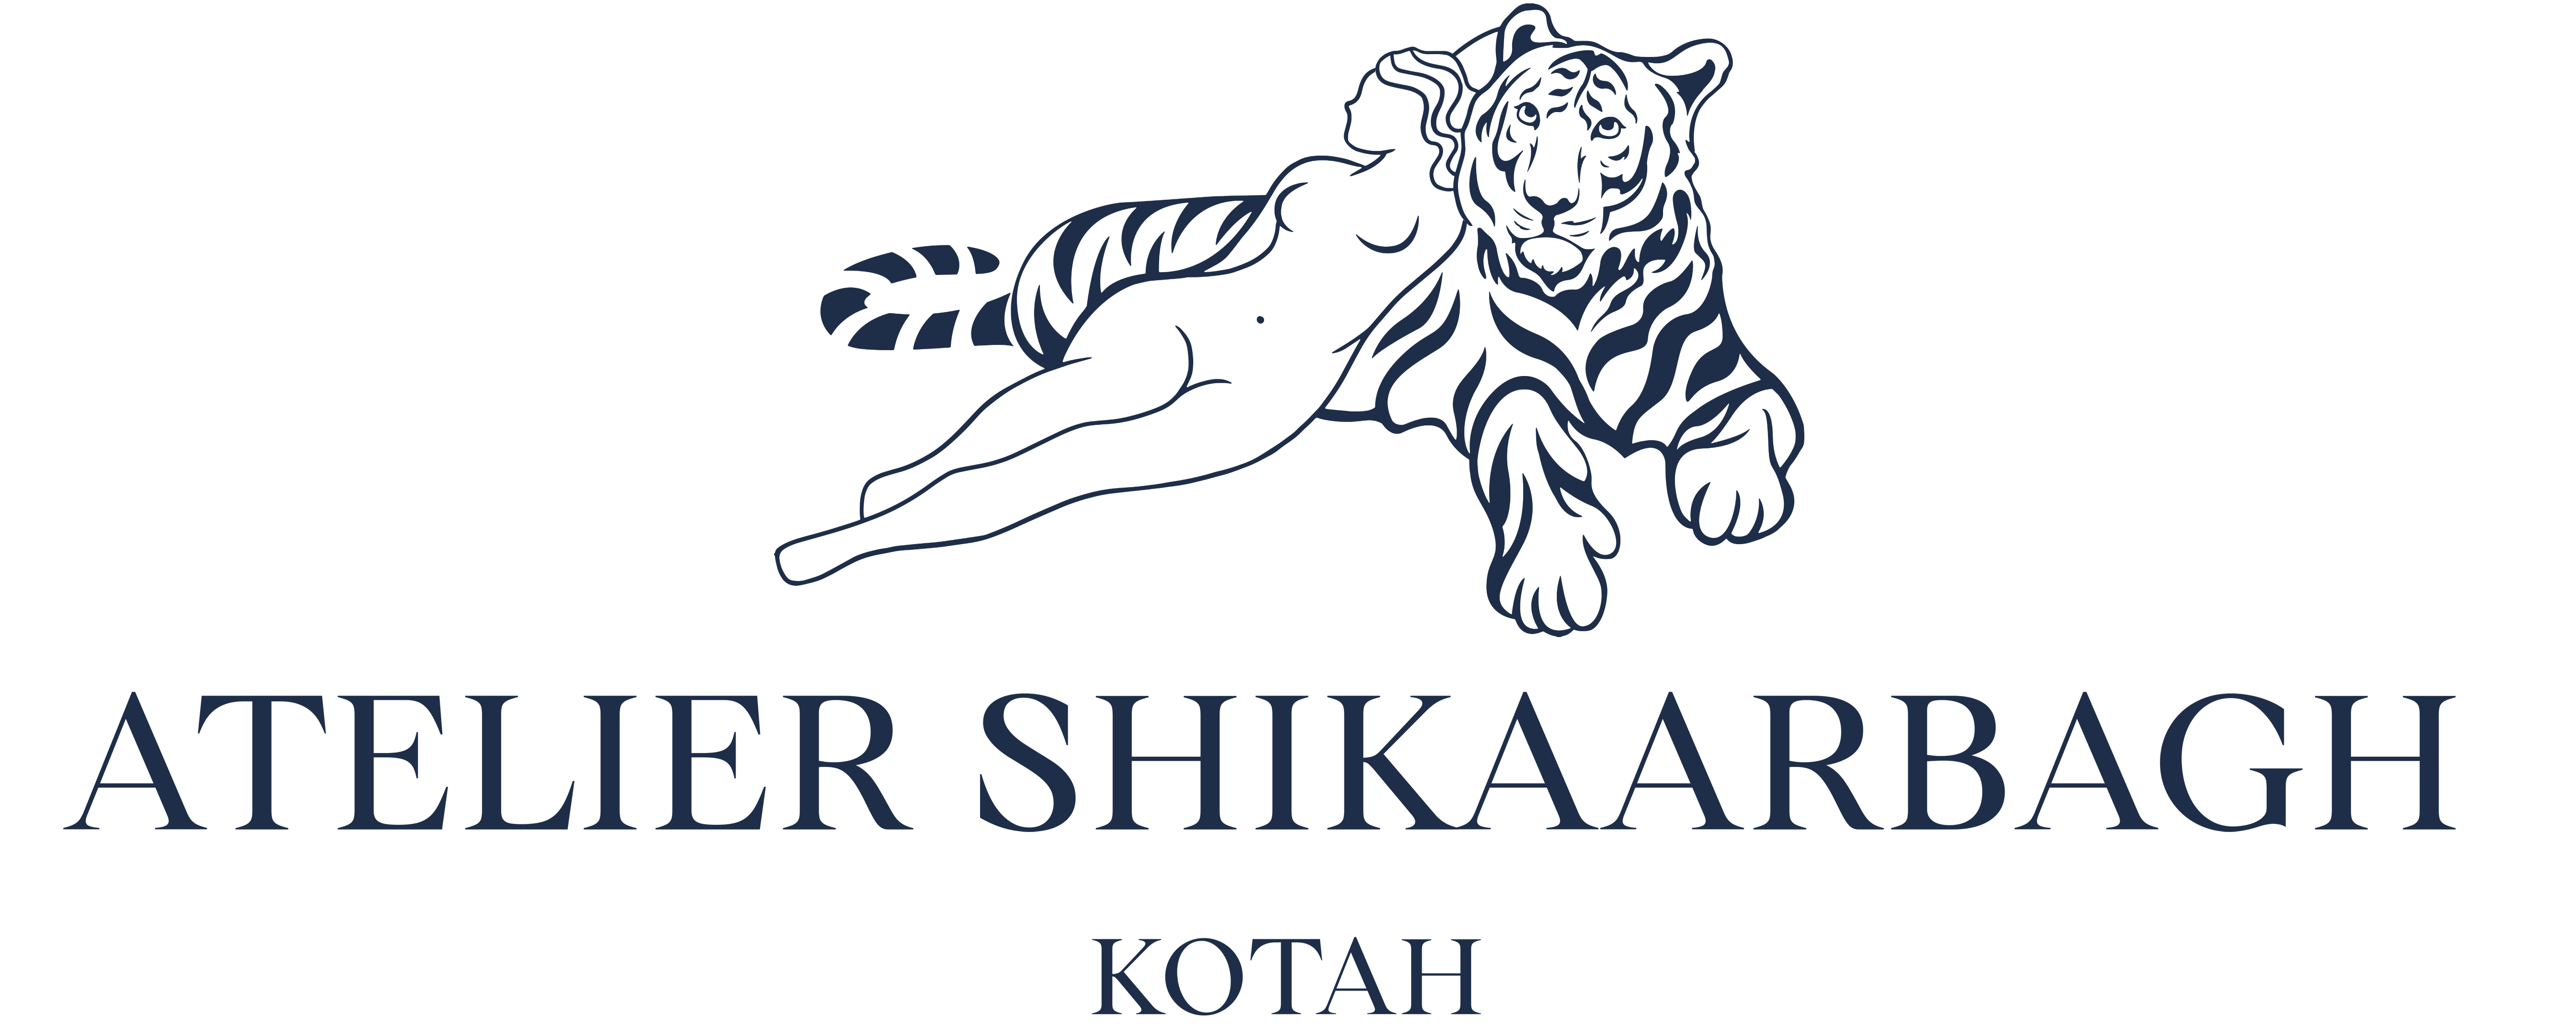 Atelier Shikaarbagh